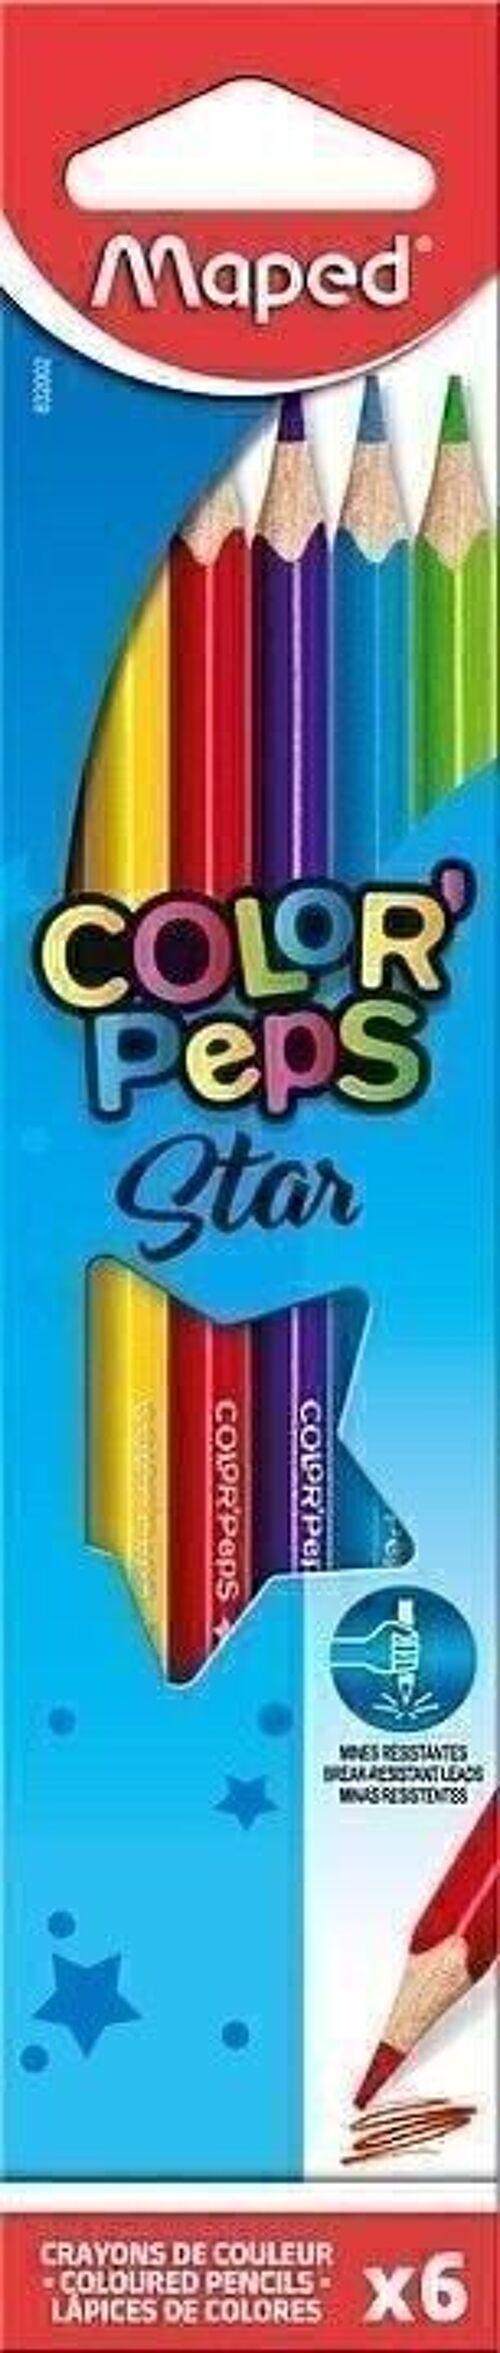 6 crayons de couleur COLOR'PEPS STAR en pochette carton